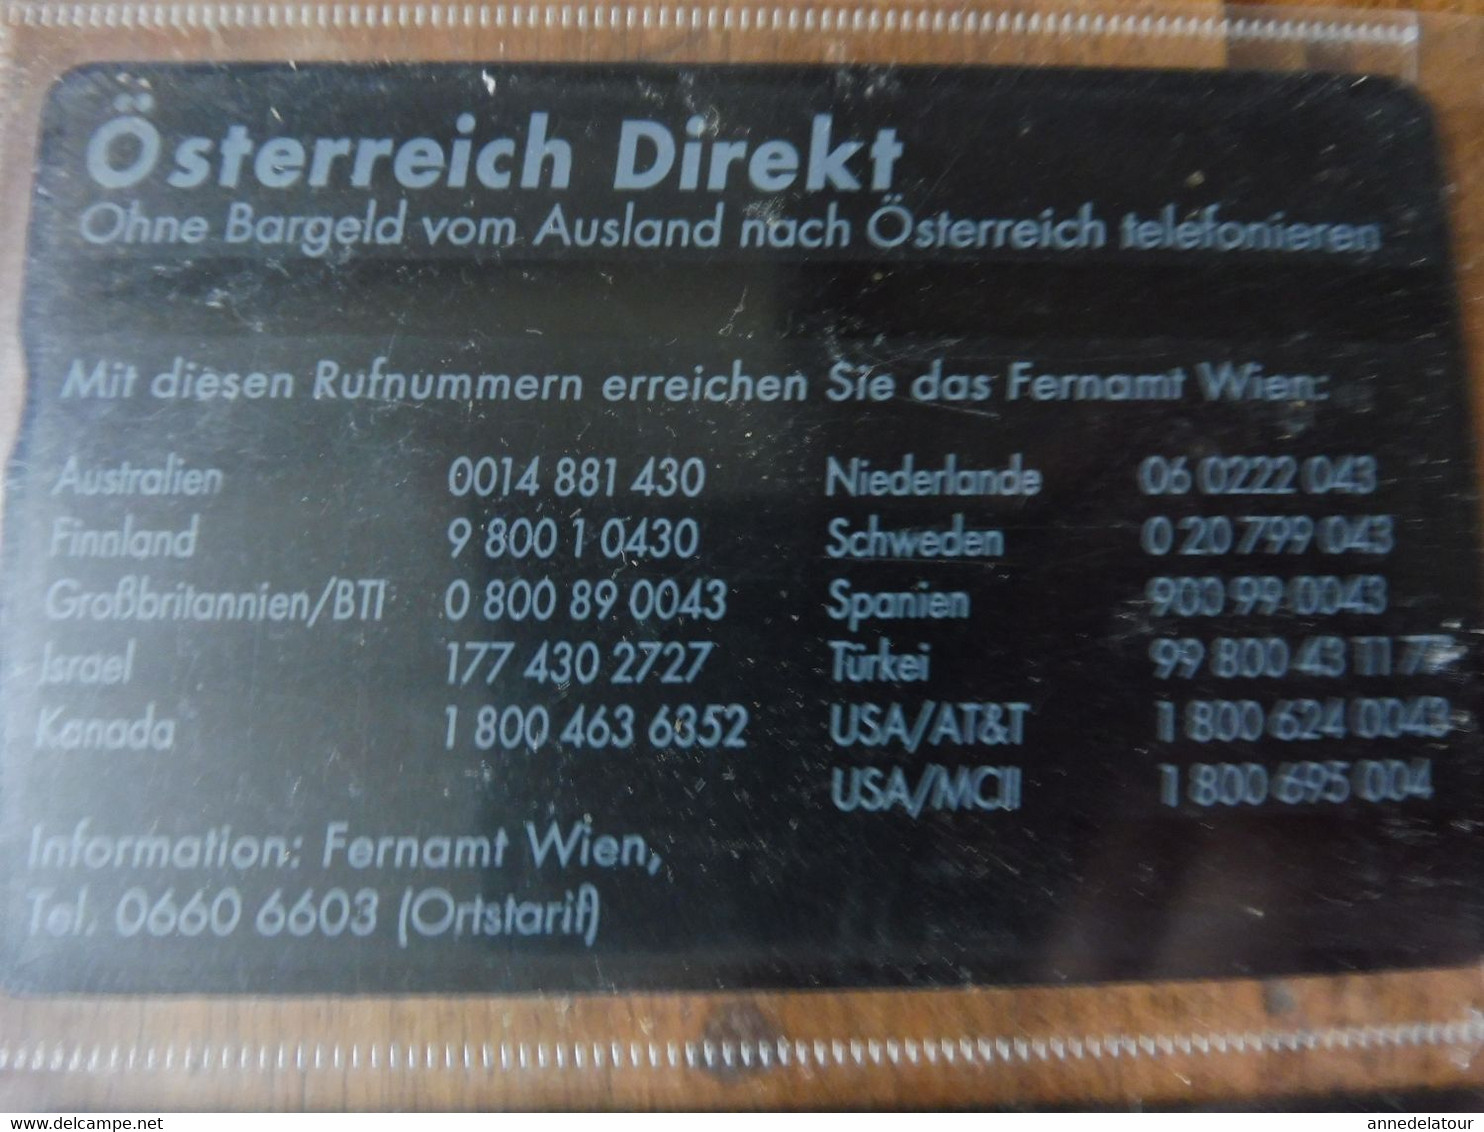 10 télécartes (cartes téléphoniques) TELEFON-WERTKARTE (dont --->   Österreich Direct, Berndorf, Naturfreunde, etc...)